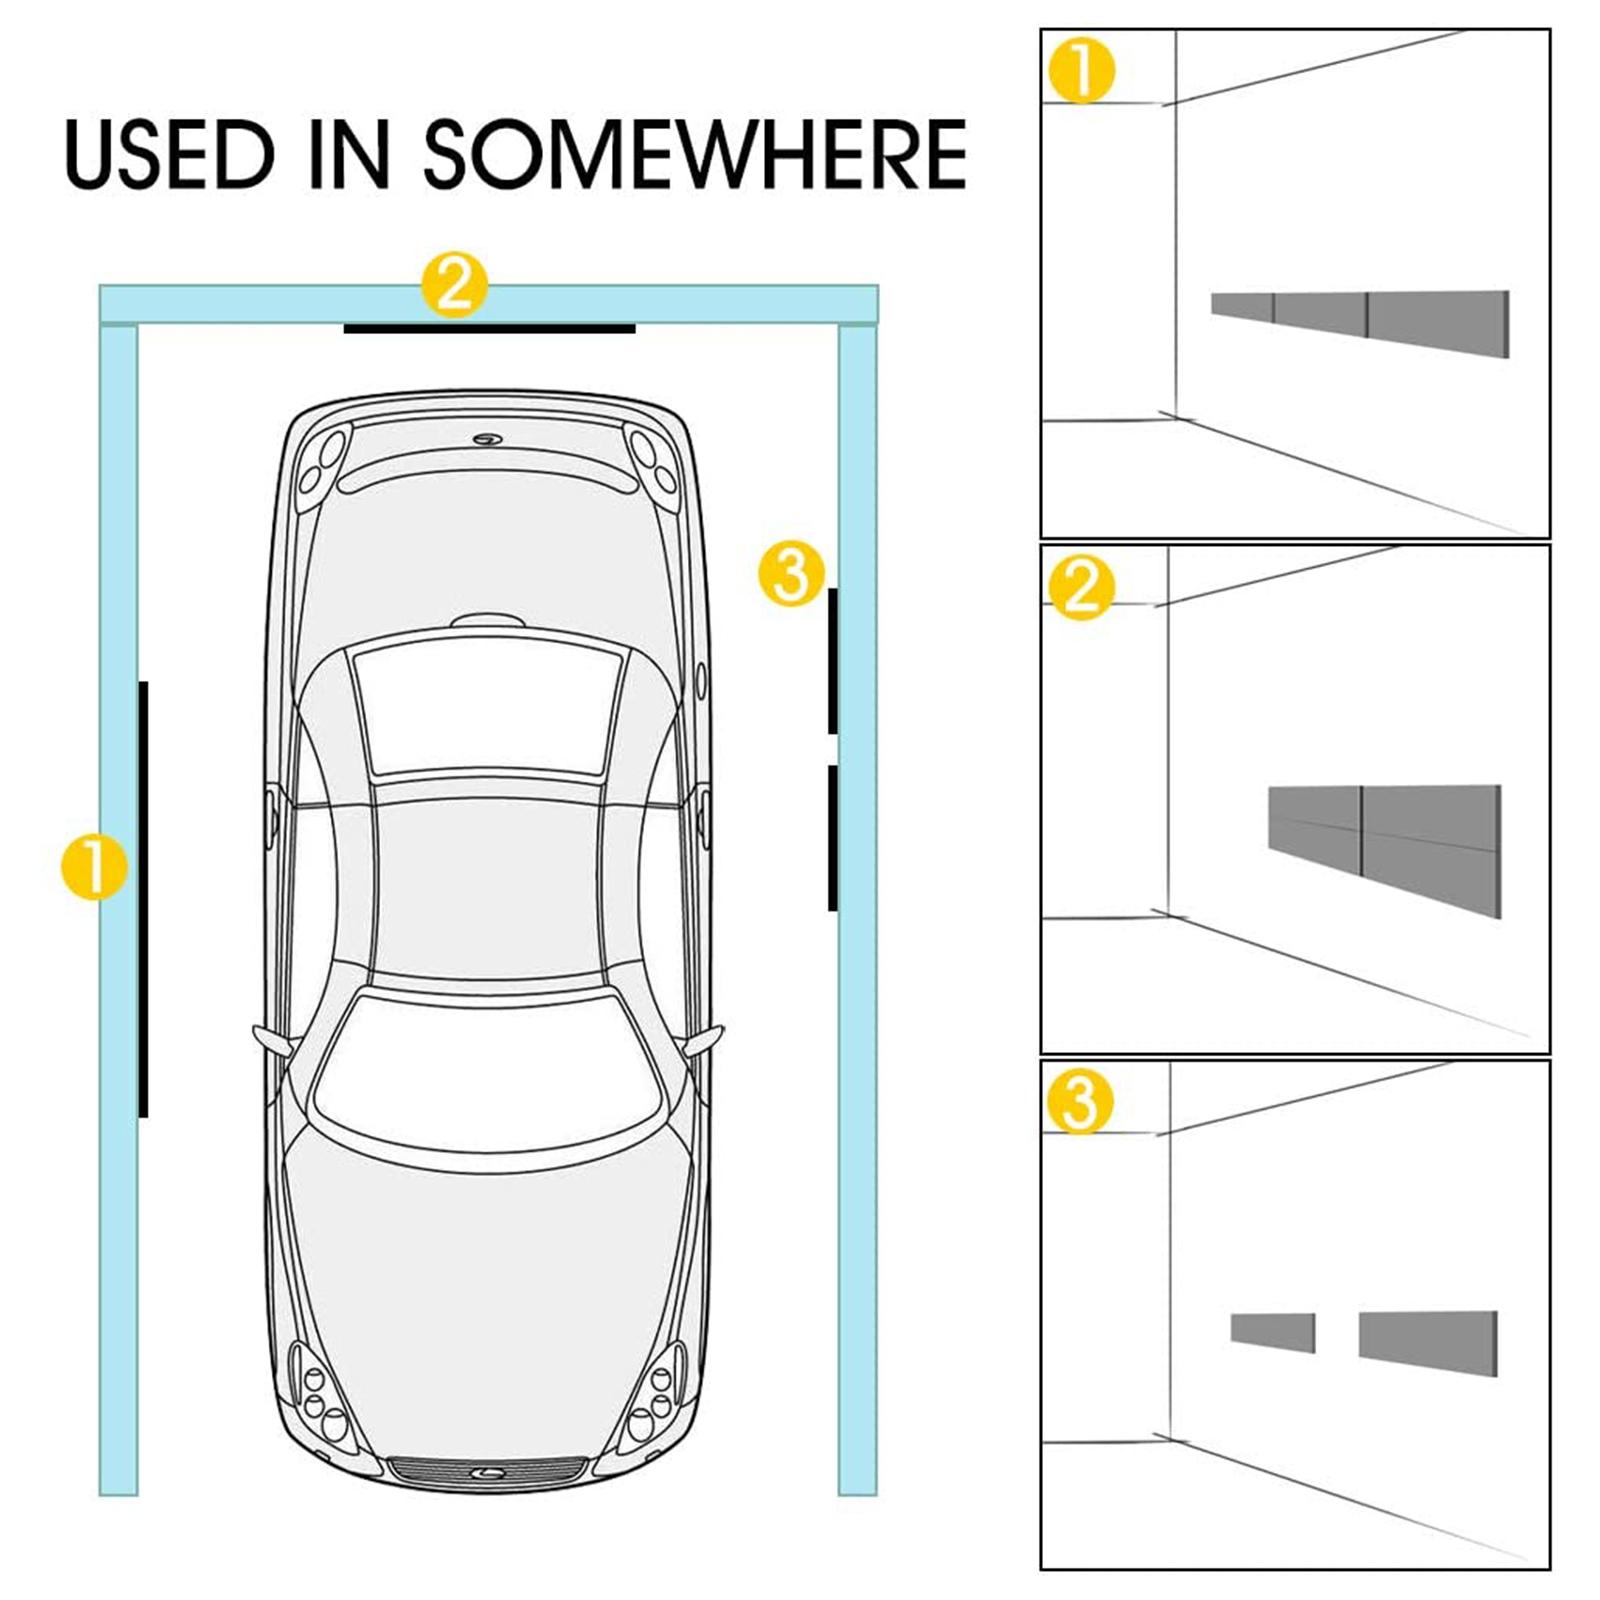 Design Wandstoßstange Garagenstoßstange zum Schutz von Autotüren